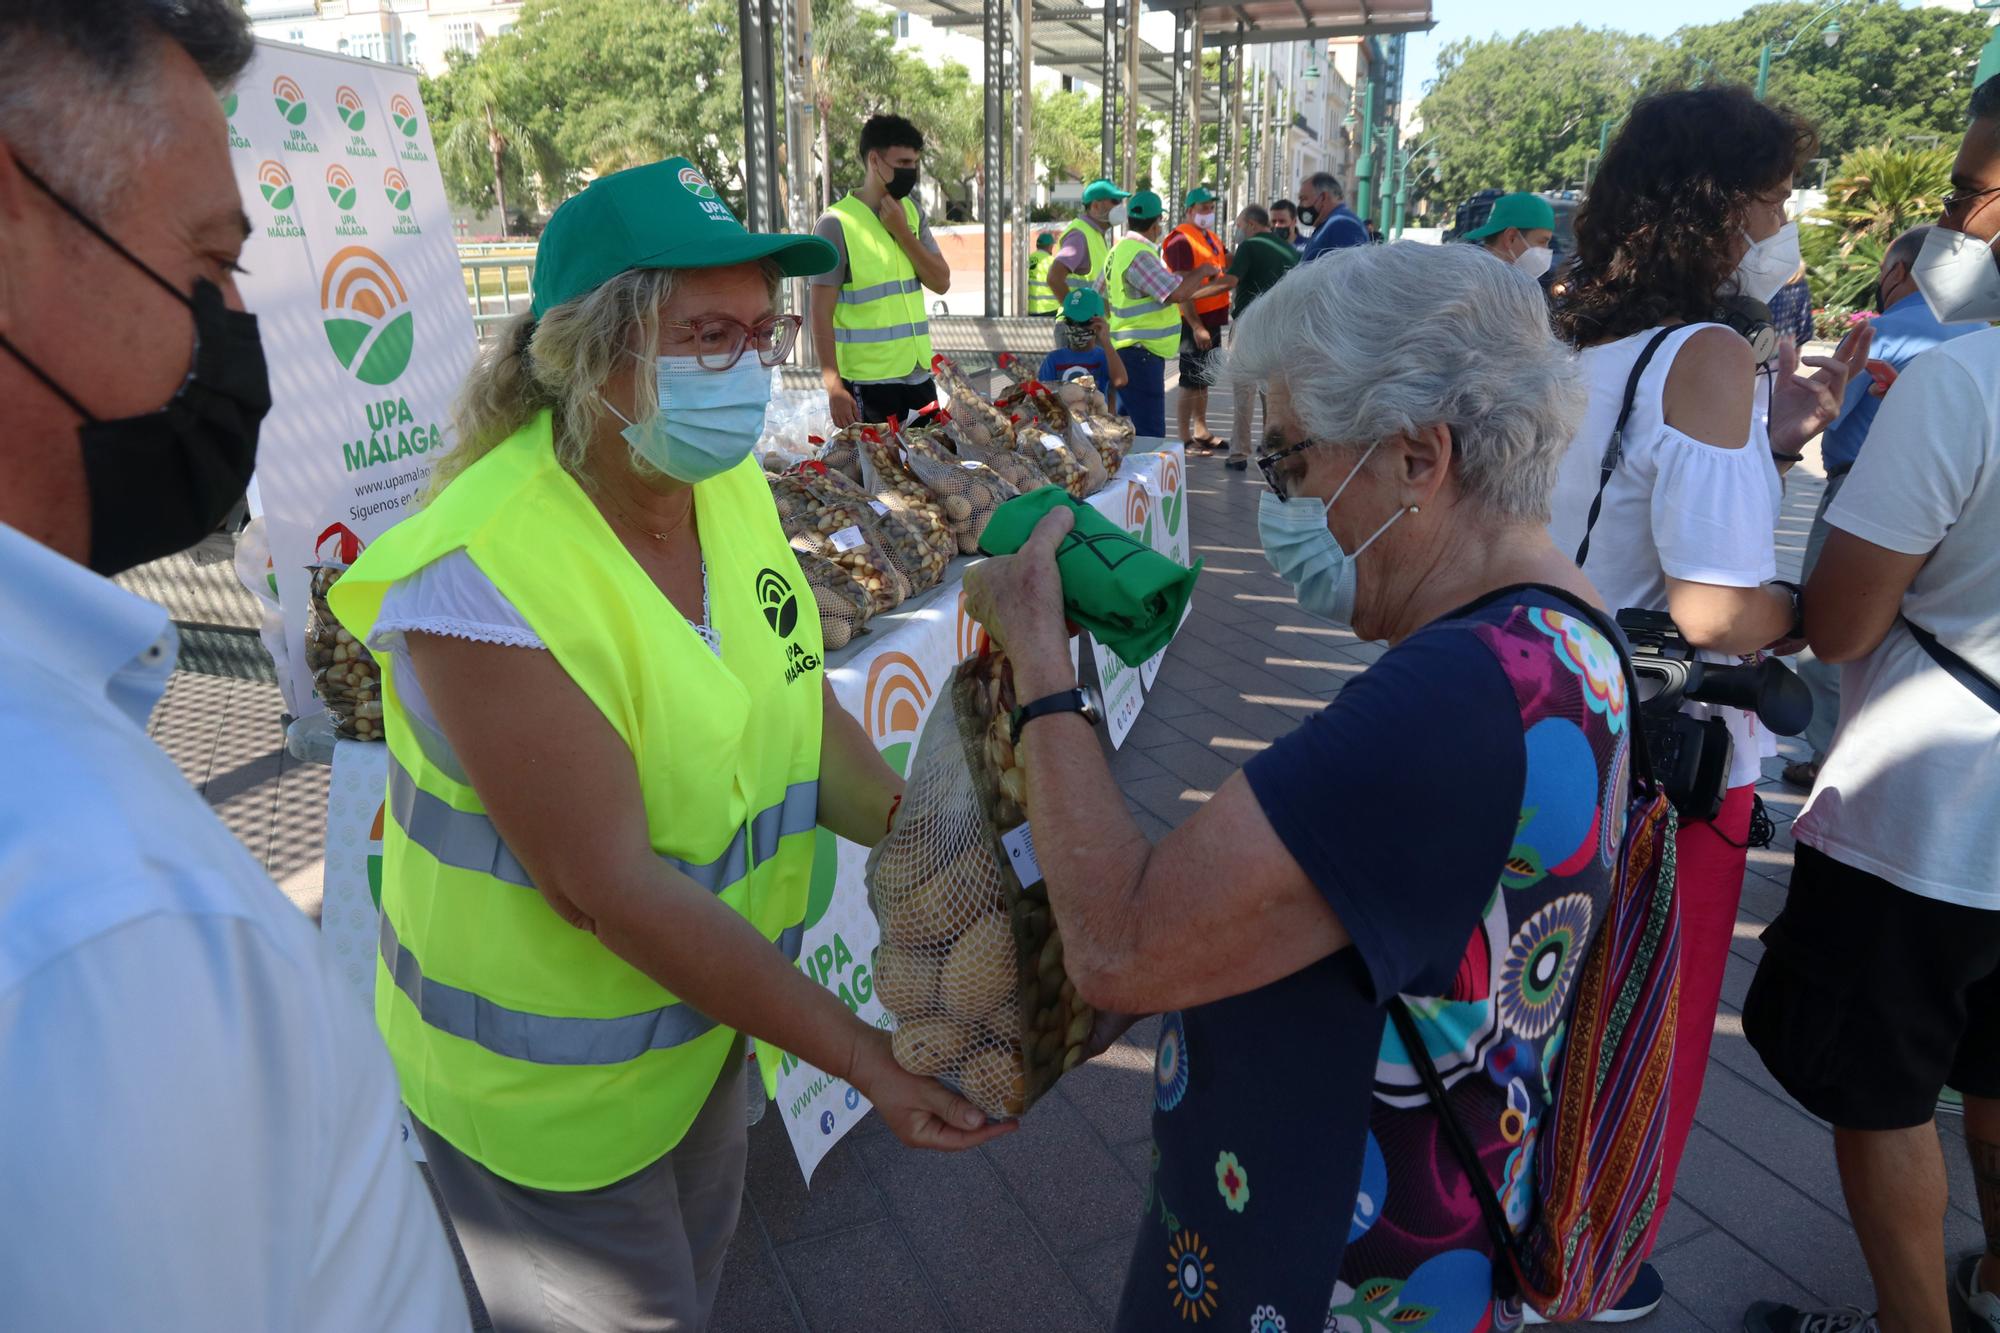 Los agricultores malagueños regalan patatas en protesta por los bajos precios en origen